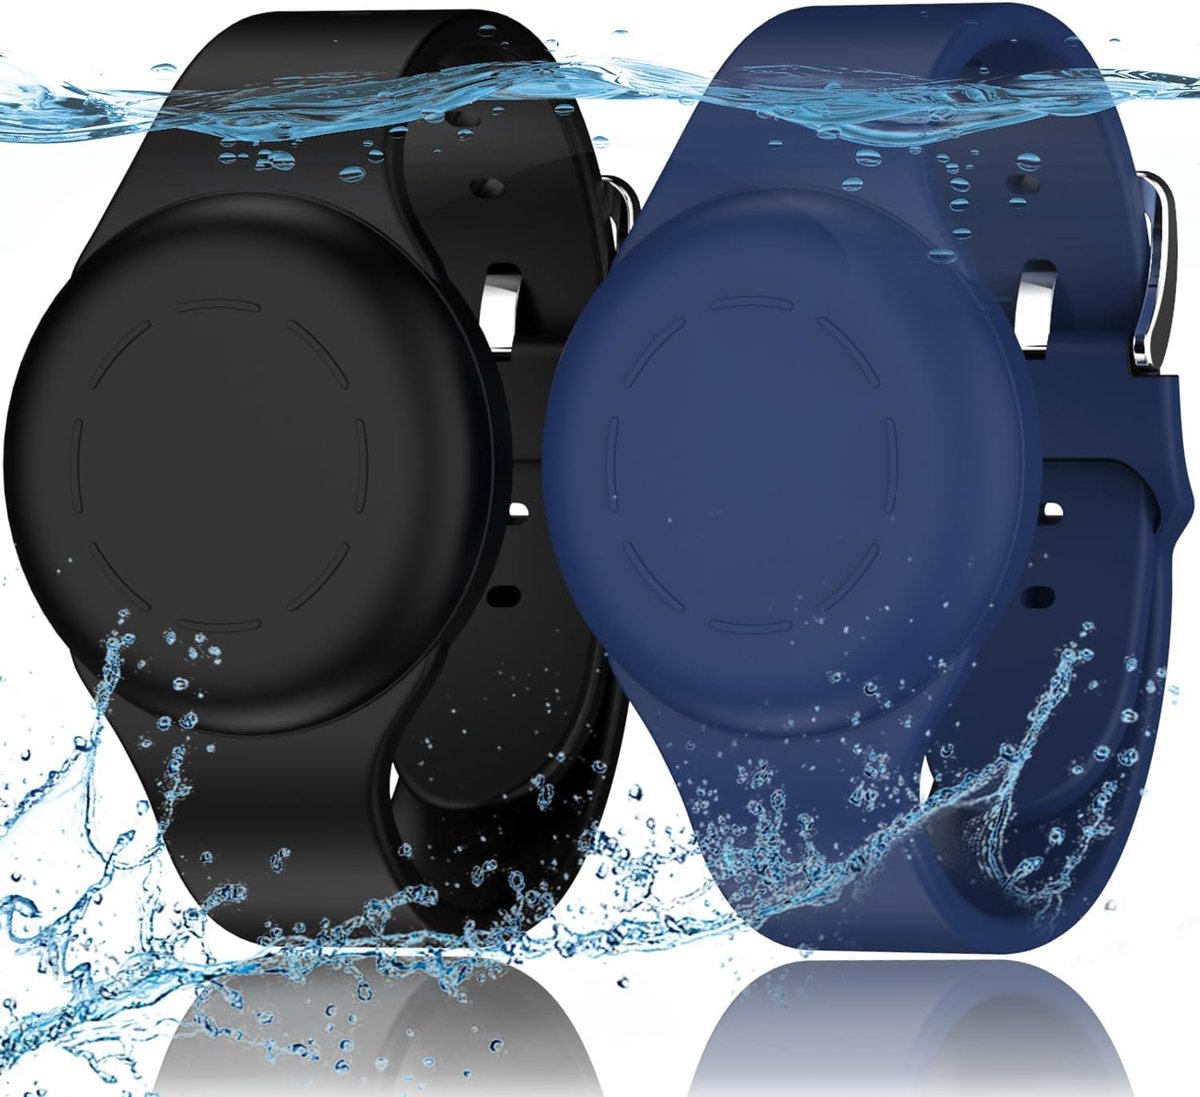 R-fun Waterdichte Air Tag Armbanden voor Kinderen [2 stuks] Compatibel met Apple Air Tag Finders met zachte siliconen, anti-verloren GPS Item Finders Case Cover voor kinderen, Nacht Blauw-Zwart